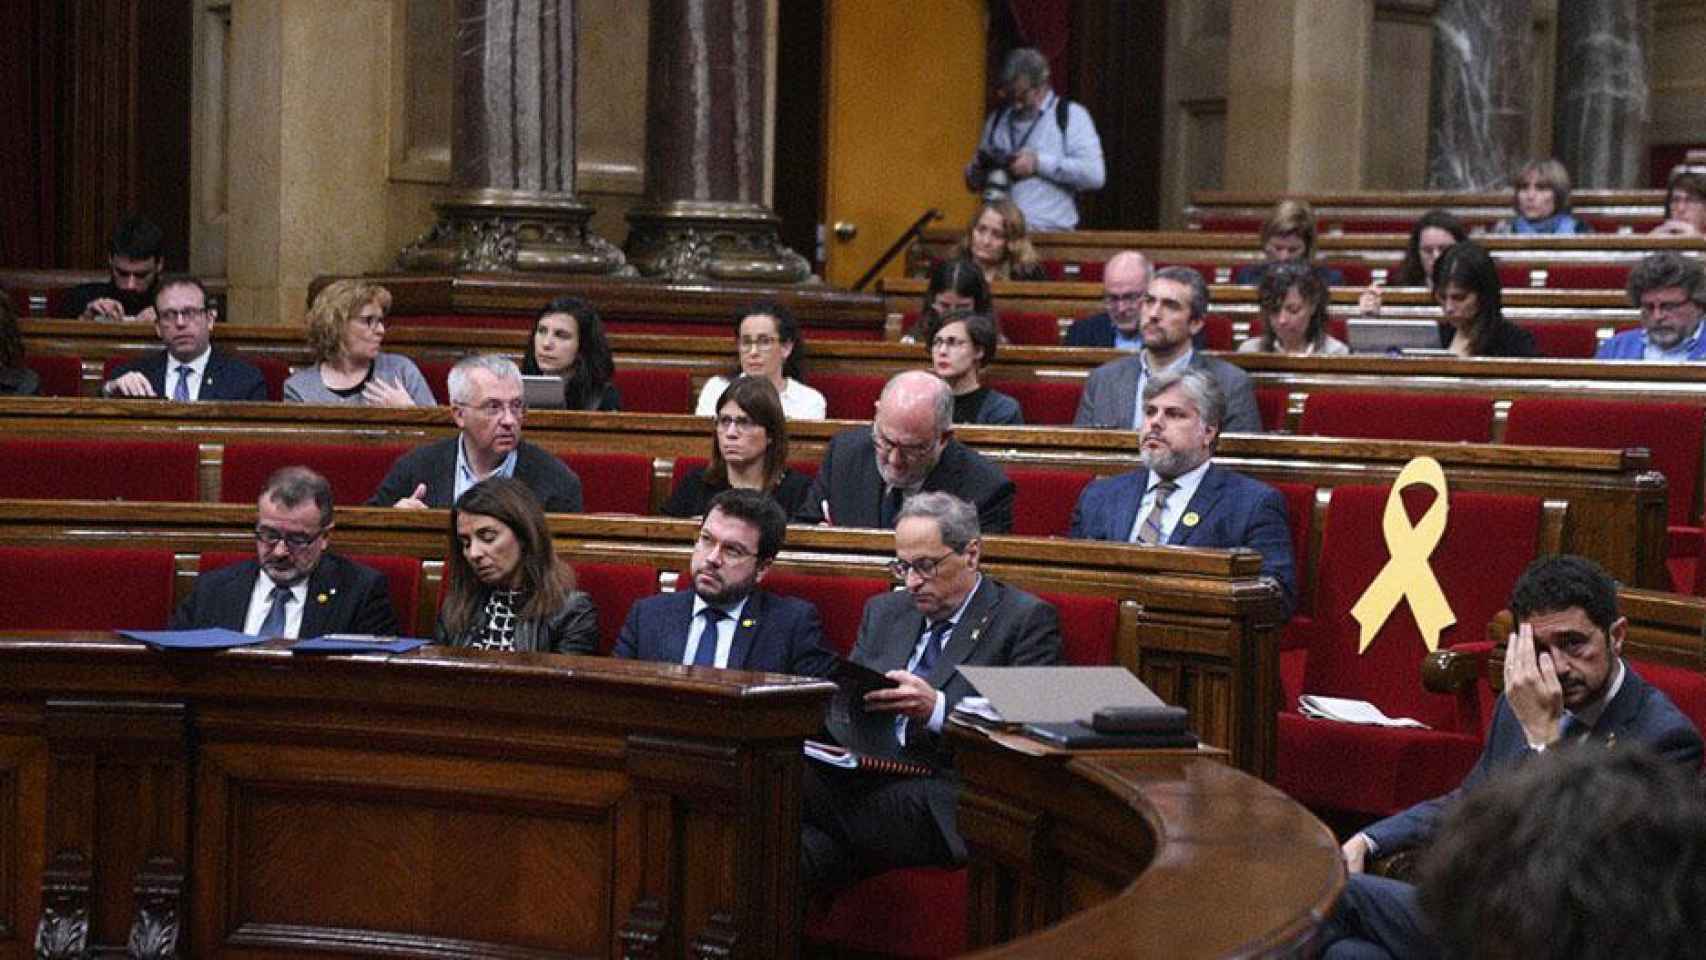 El presidente de la Generalitat Quim Torra en el Parlament junto al resto de miembros del Govern / CG